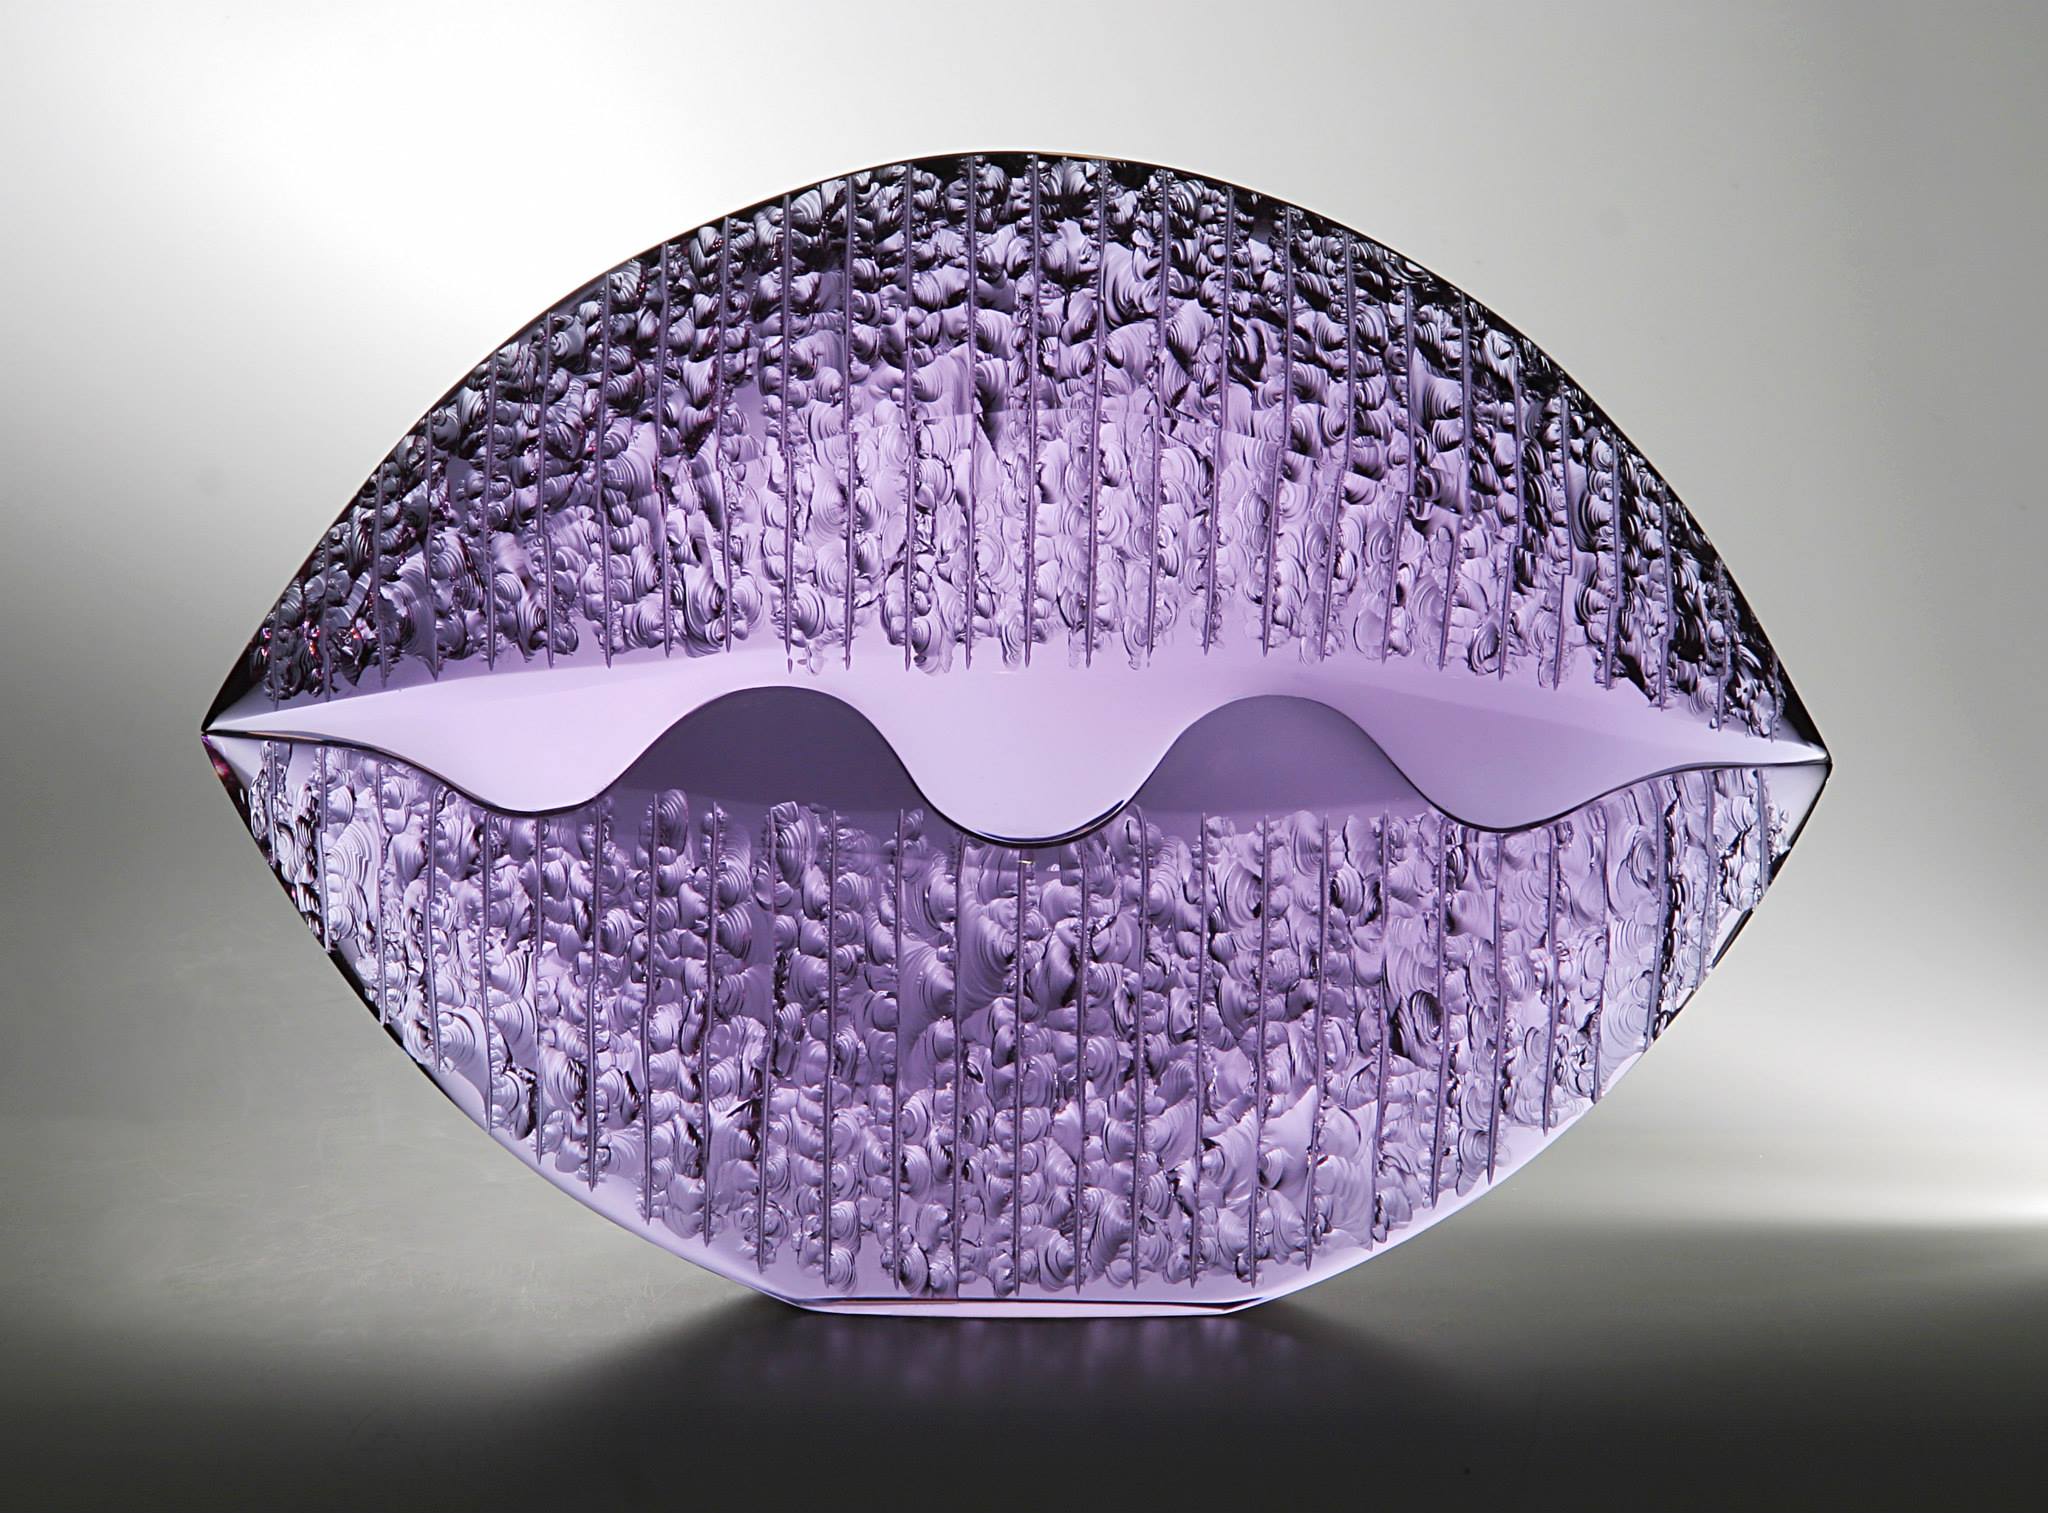 V. Klein - Studio glass, 2009